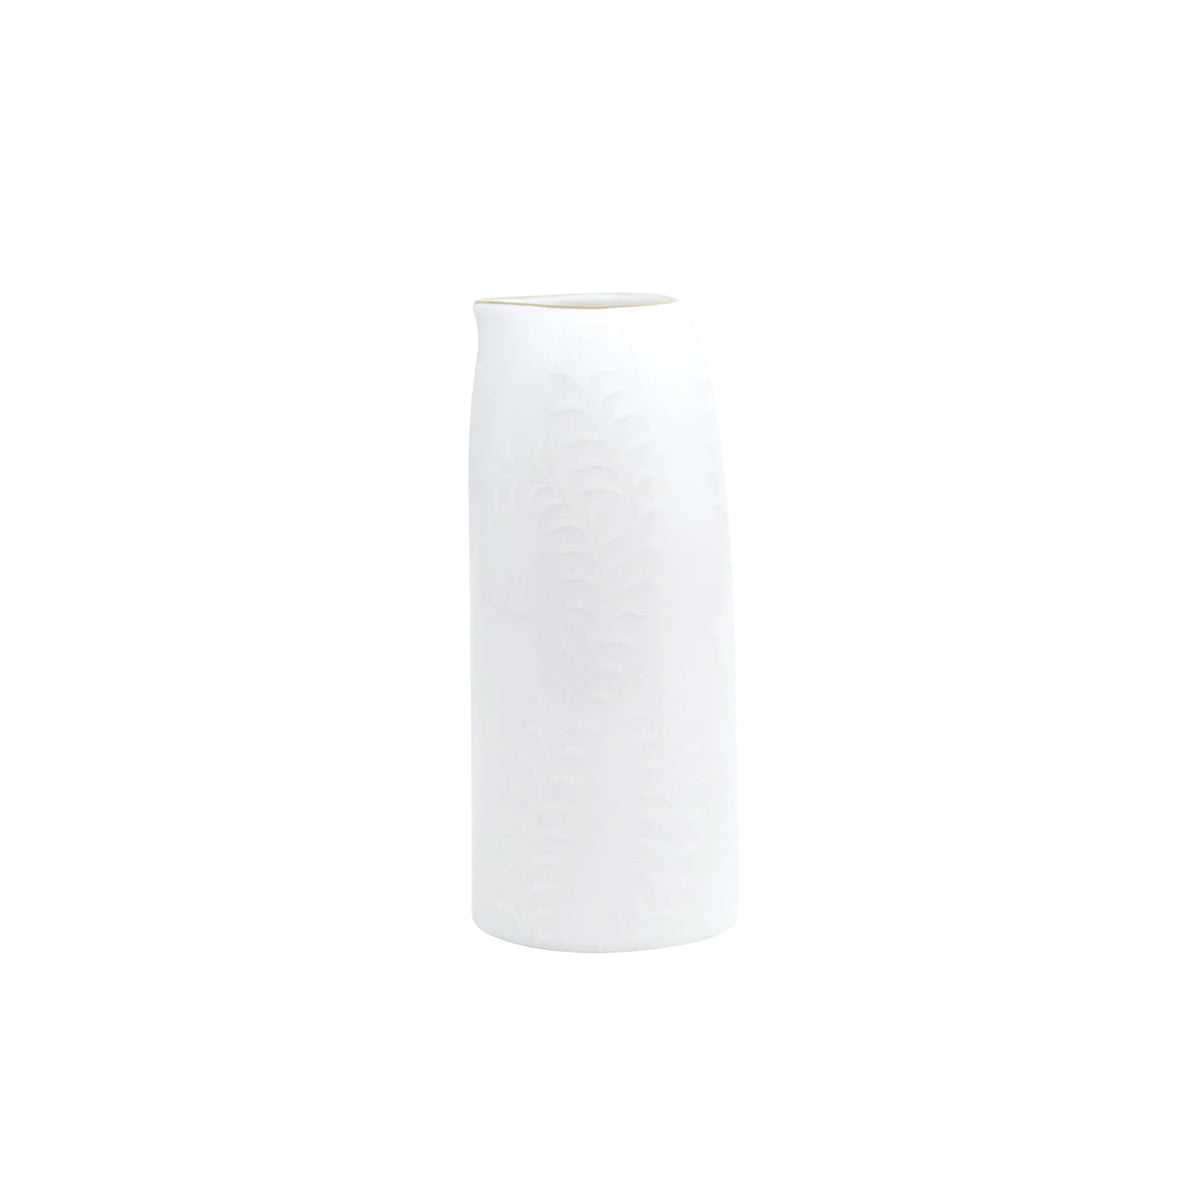 ARJUNA white on white mesh Gold - Sake jug, large